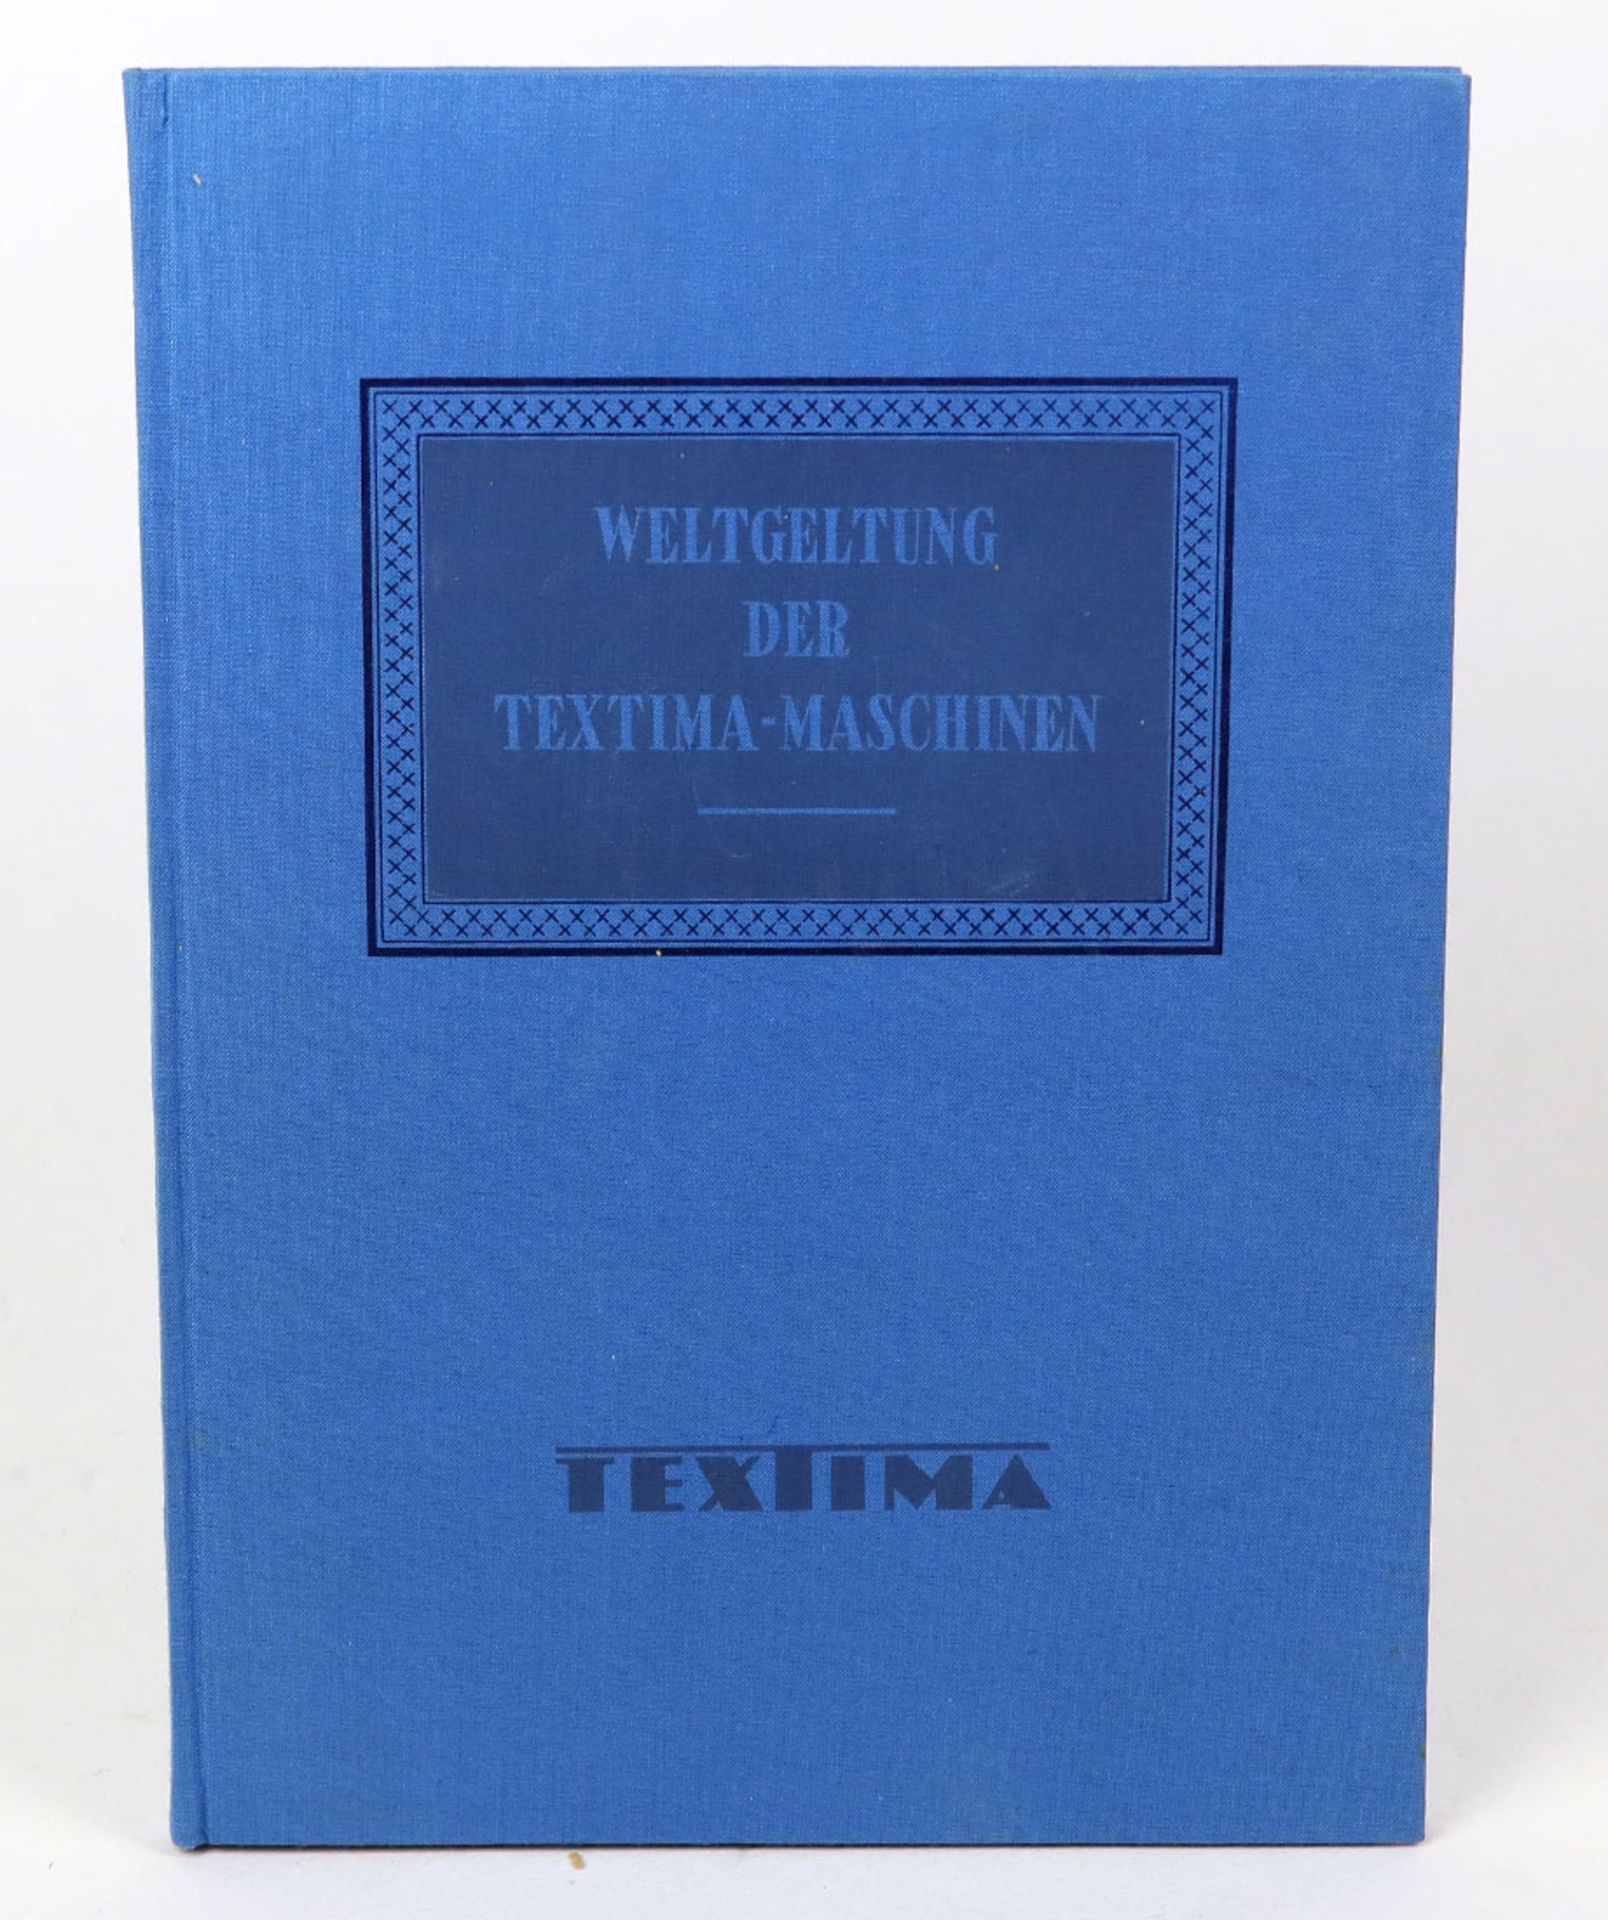 Textima-Maschinenfür die Textil- und Bekleidungsindustrie, geschichtliches, gegenwärtiges, 78 S.